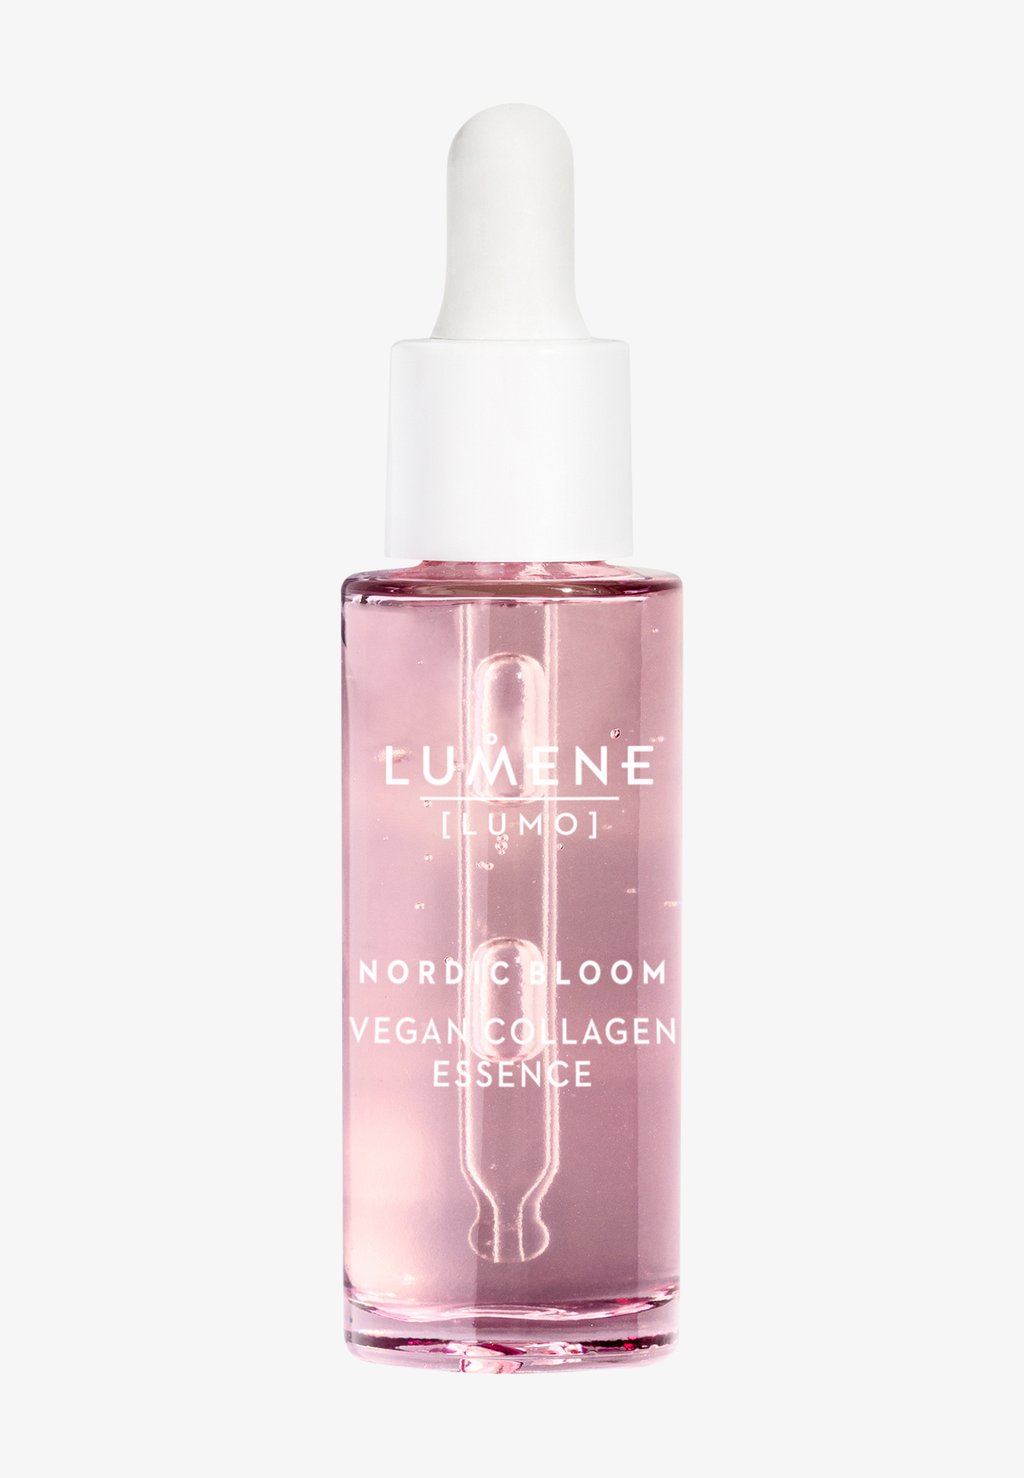 Сыворотка Nordic Bloom [Lumo] Vegan Collagen Essence Lumene